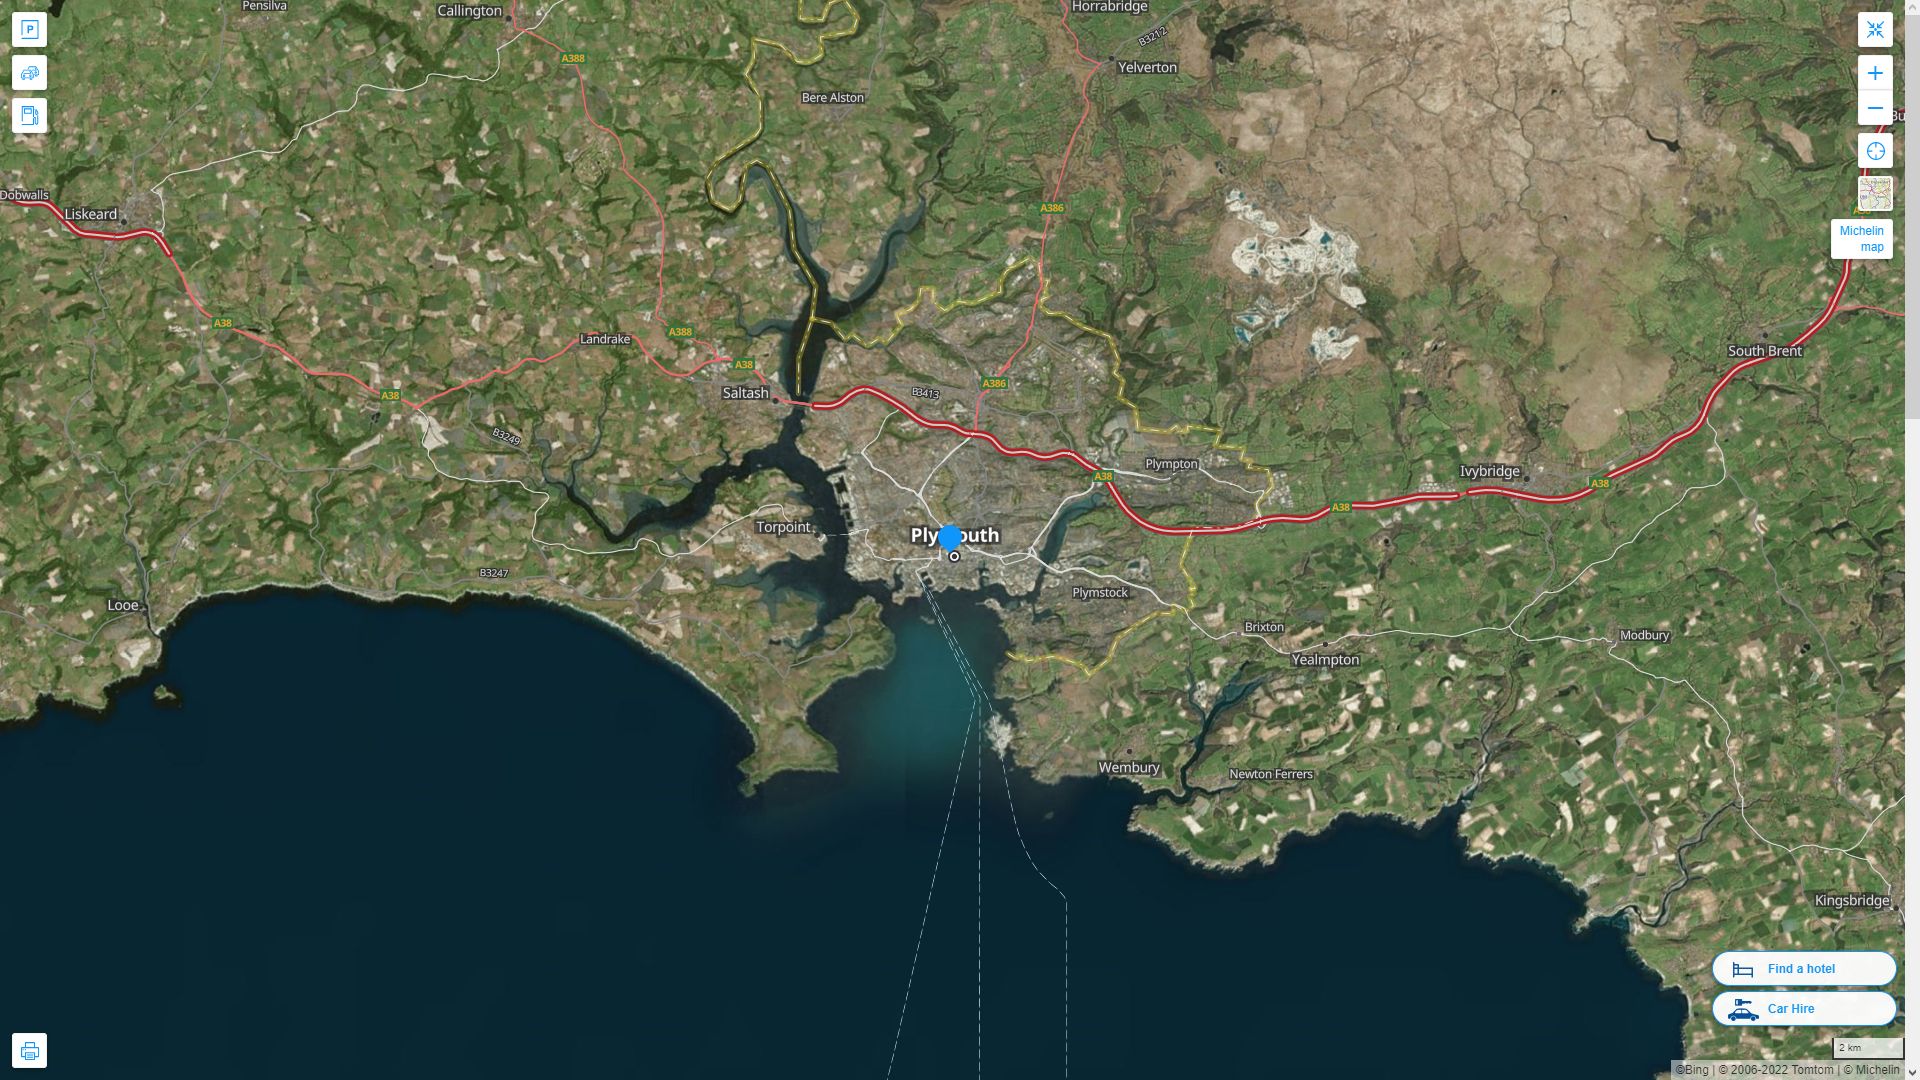 Plymouth Royaume Uni Autoroute et carte routiere avec vue satellite